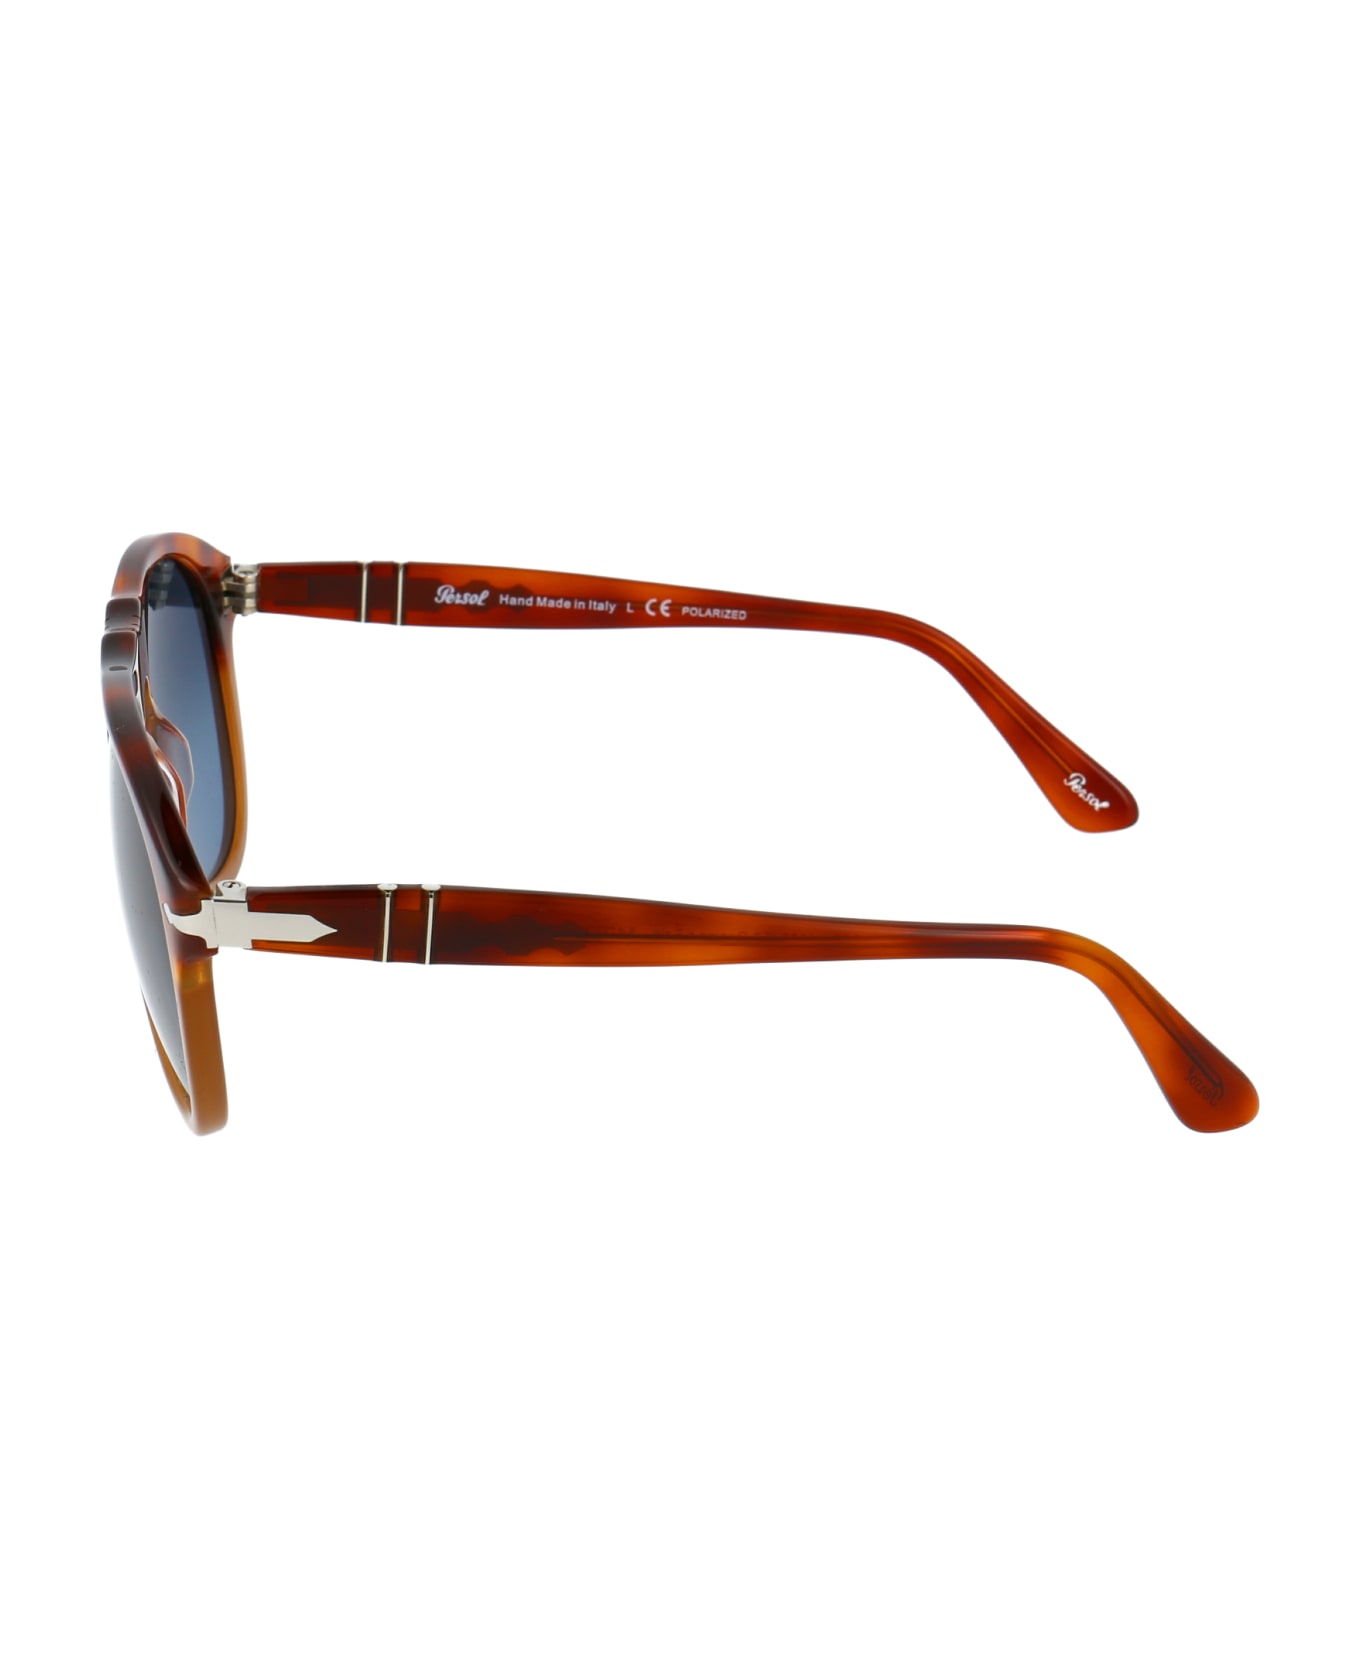 Persol 0po0649 Sunglasses - 1025S3 RESINA E SALE